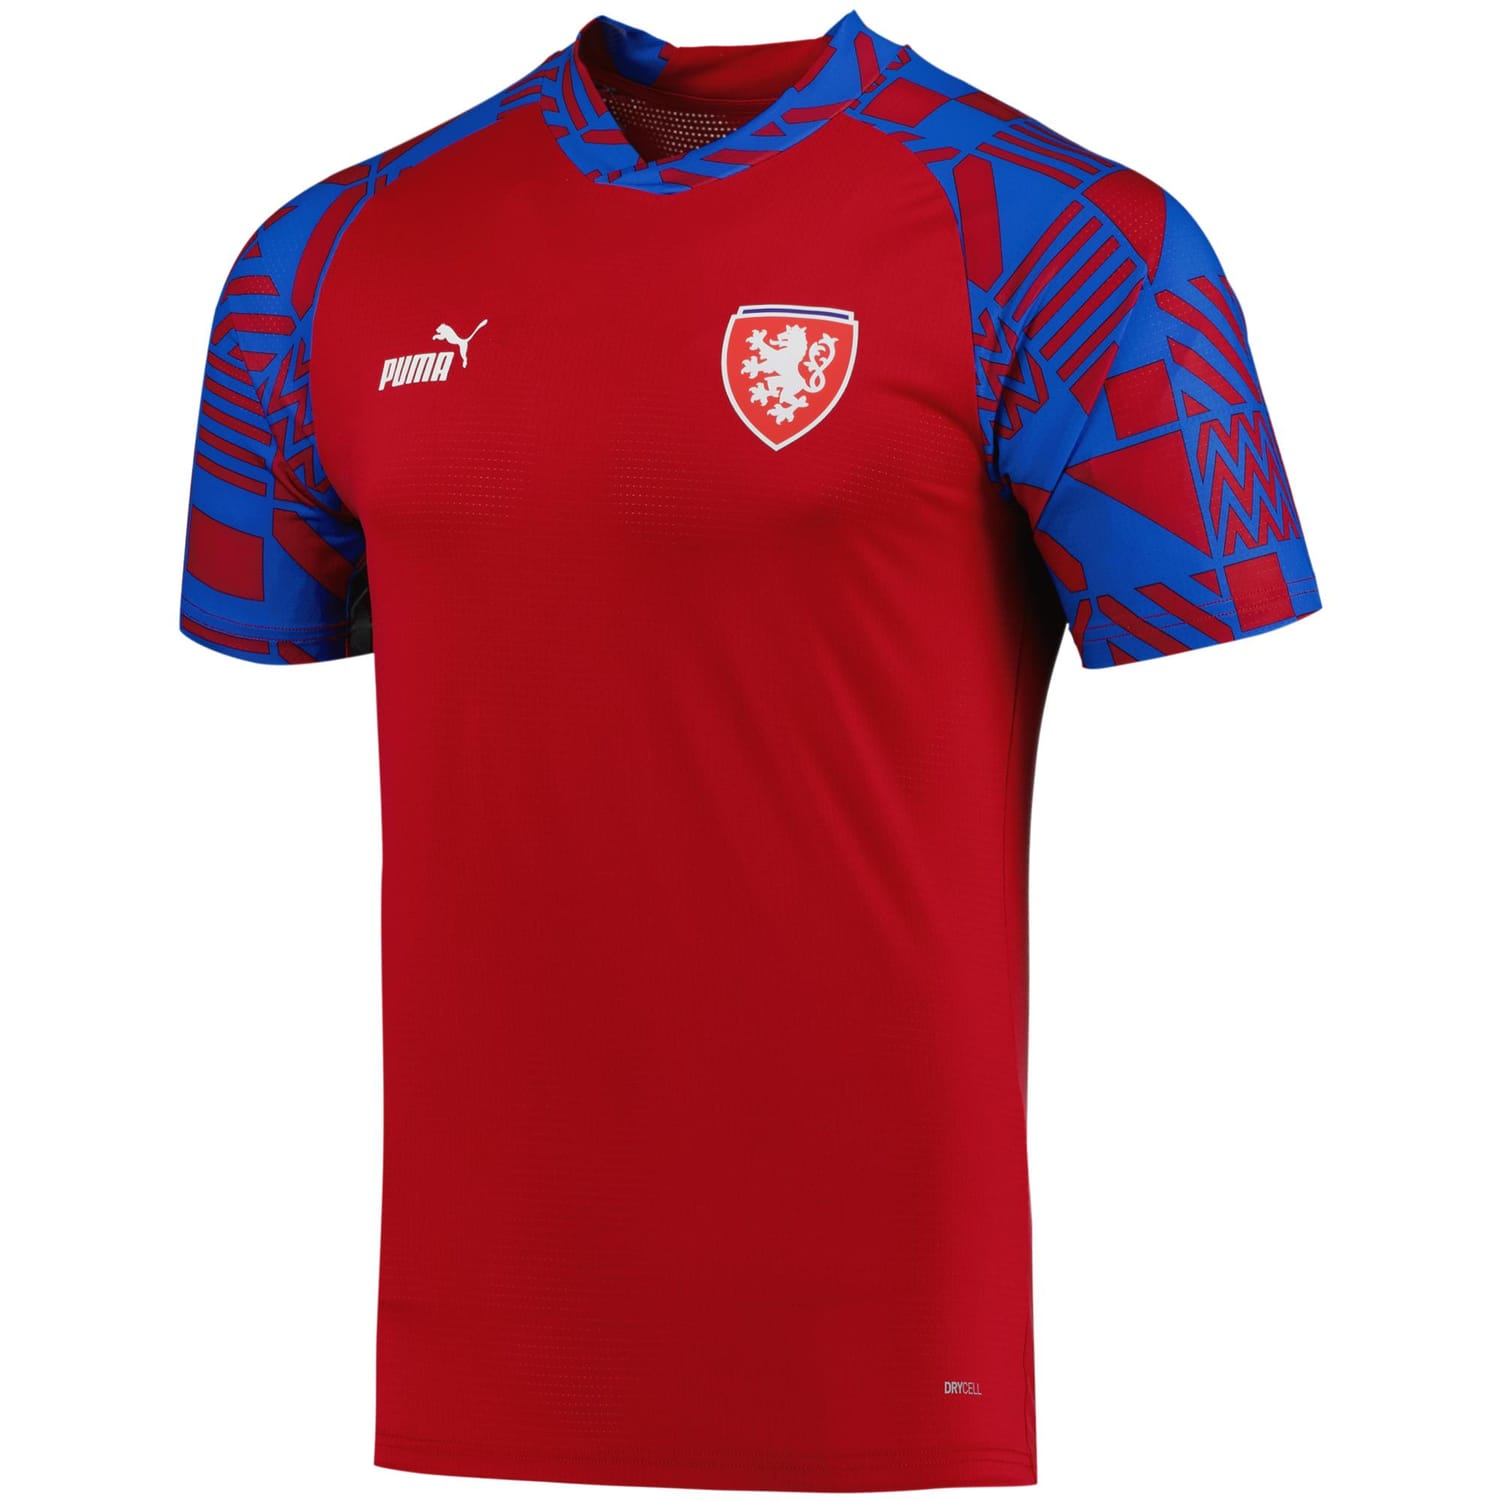 Czech Republic National Team Pre-Match Jersey Shirt Red for Men